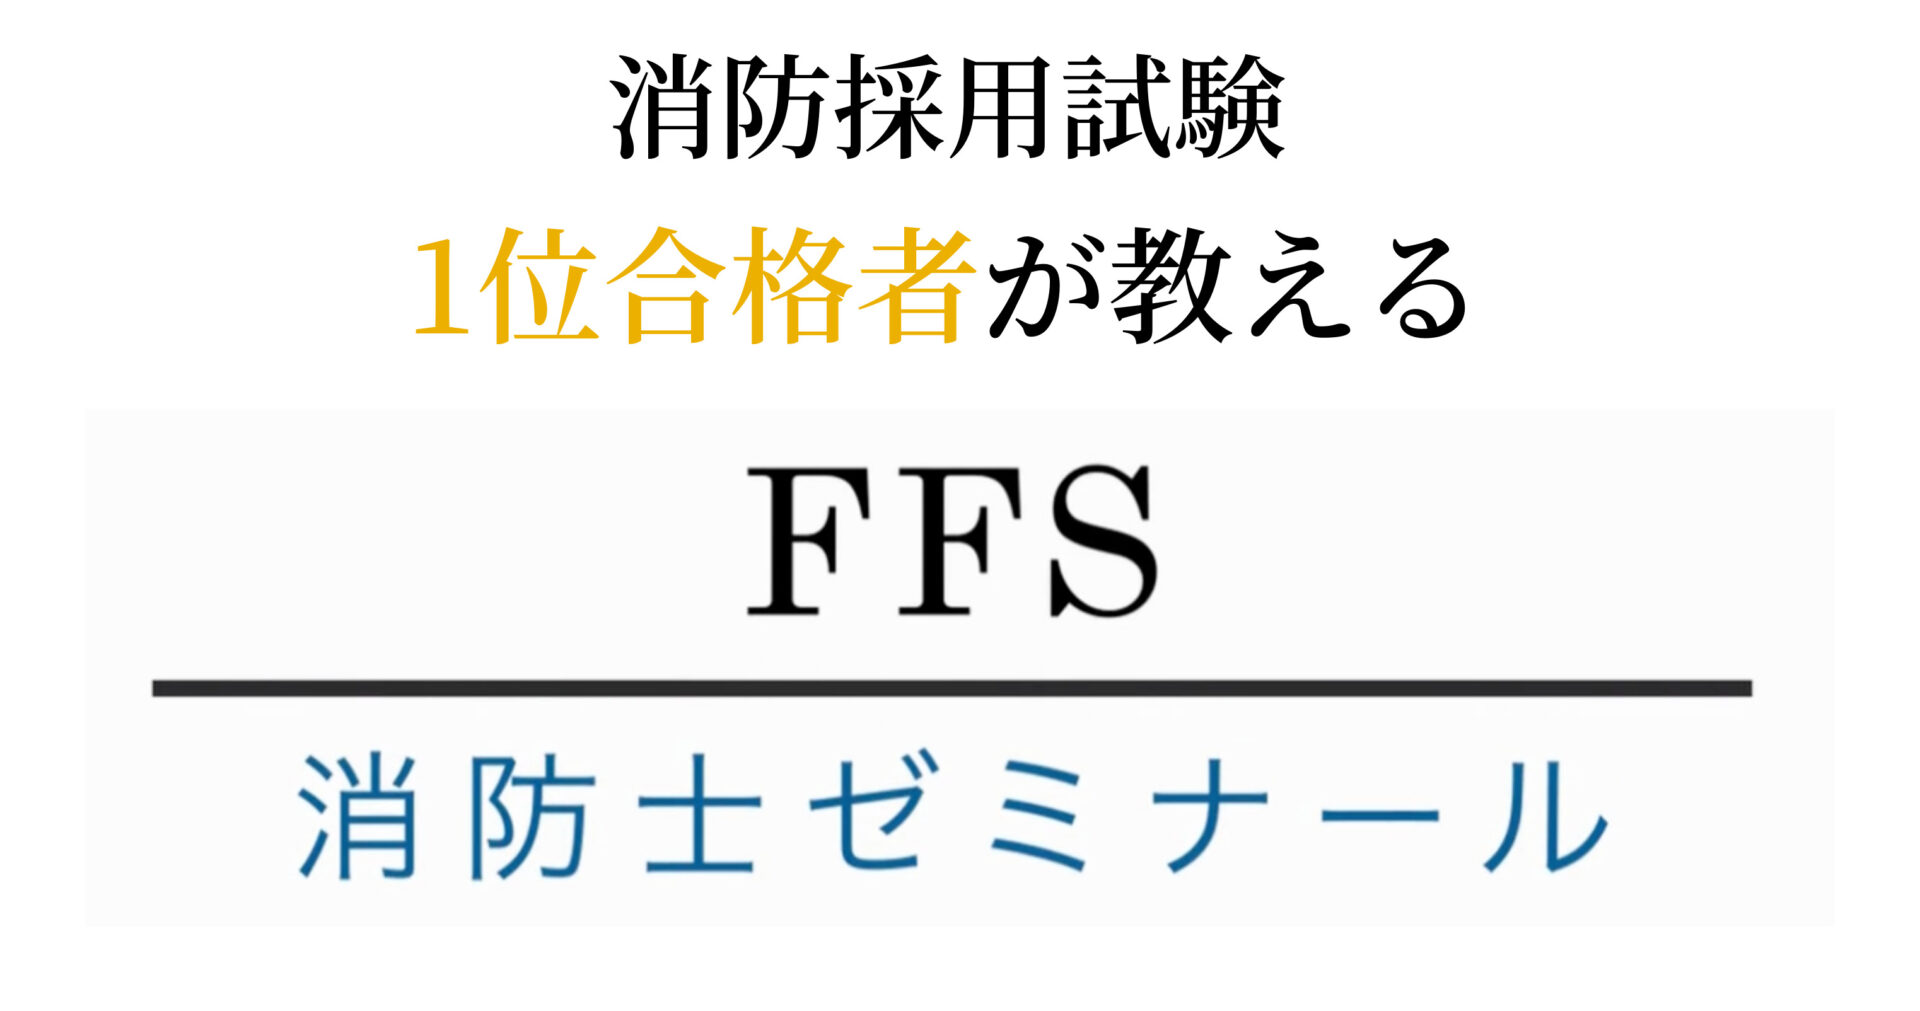 【公式】FFS消防士ゼミナール